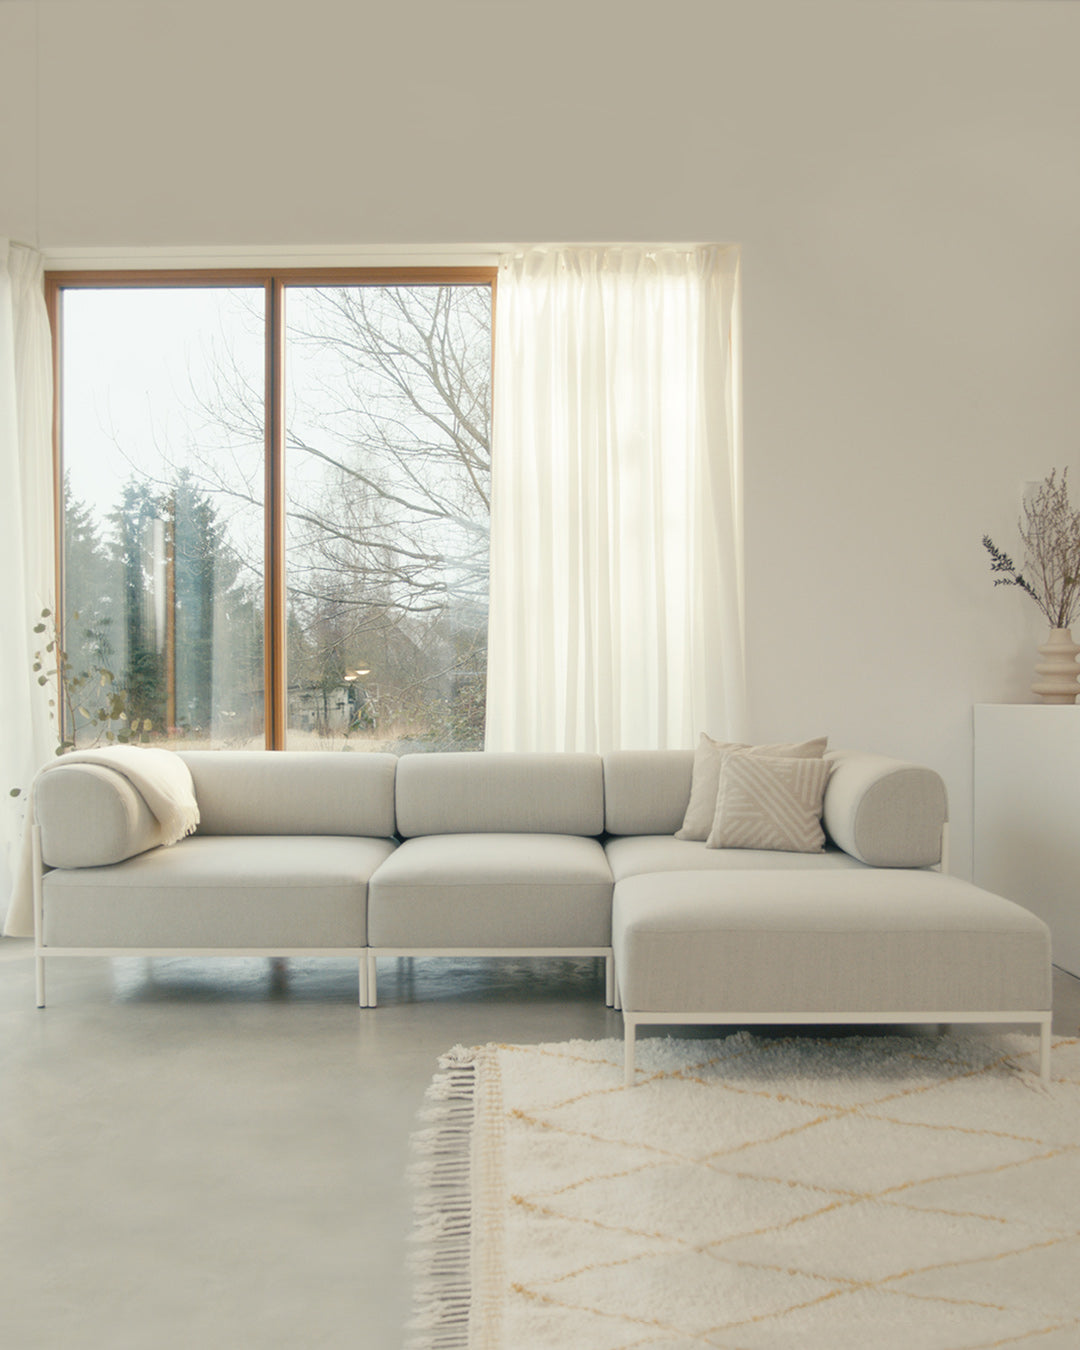 Modulsofa mit nachhaltiger Produktion in Deutschland und innovativem Sofa-Design aus Berlin